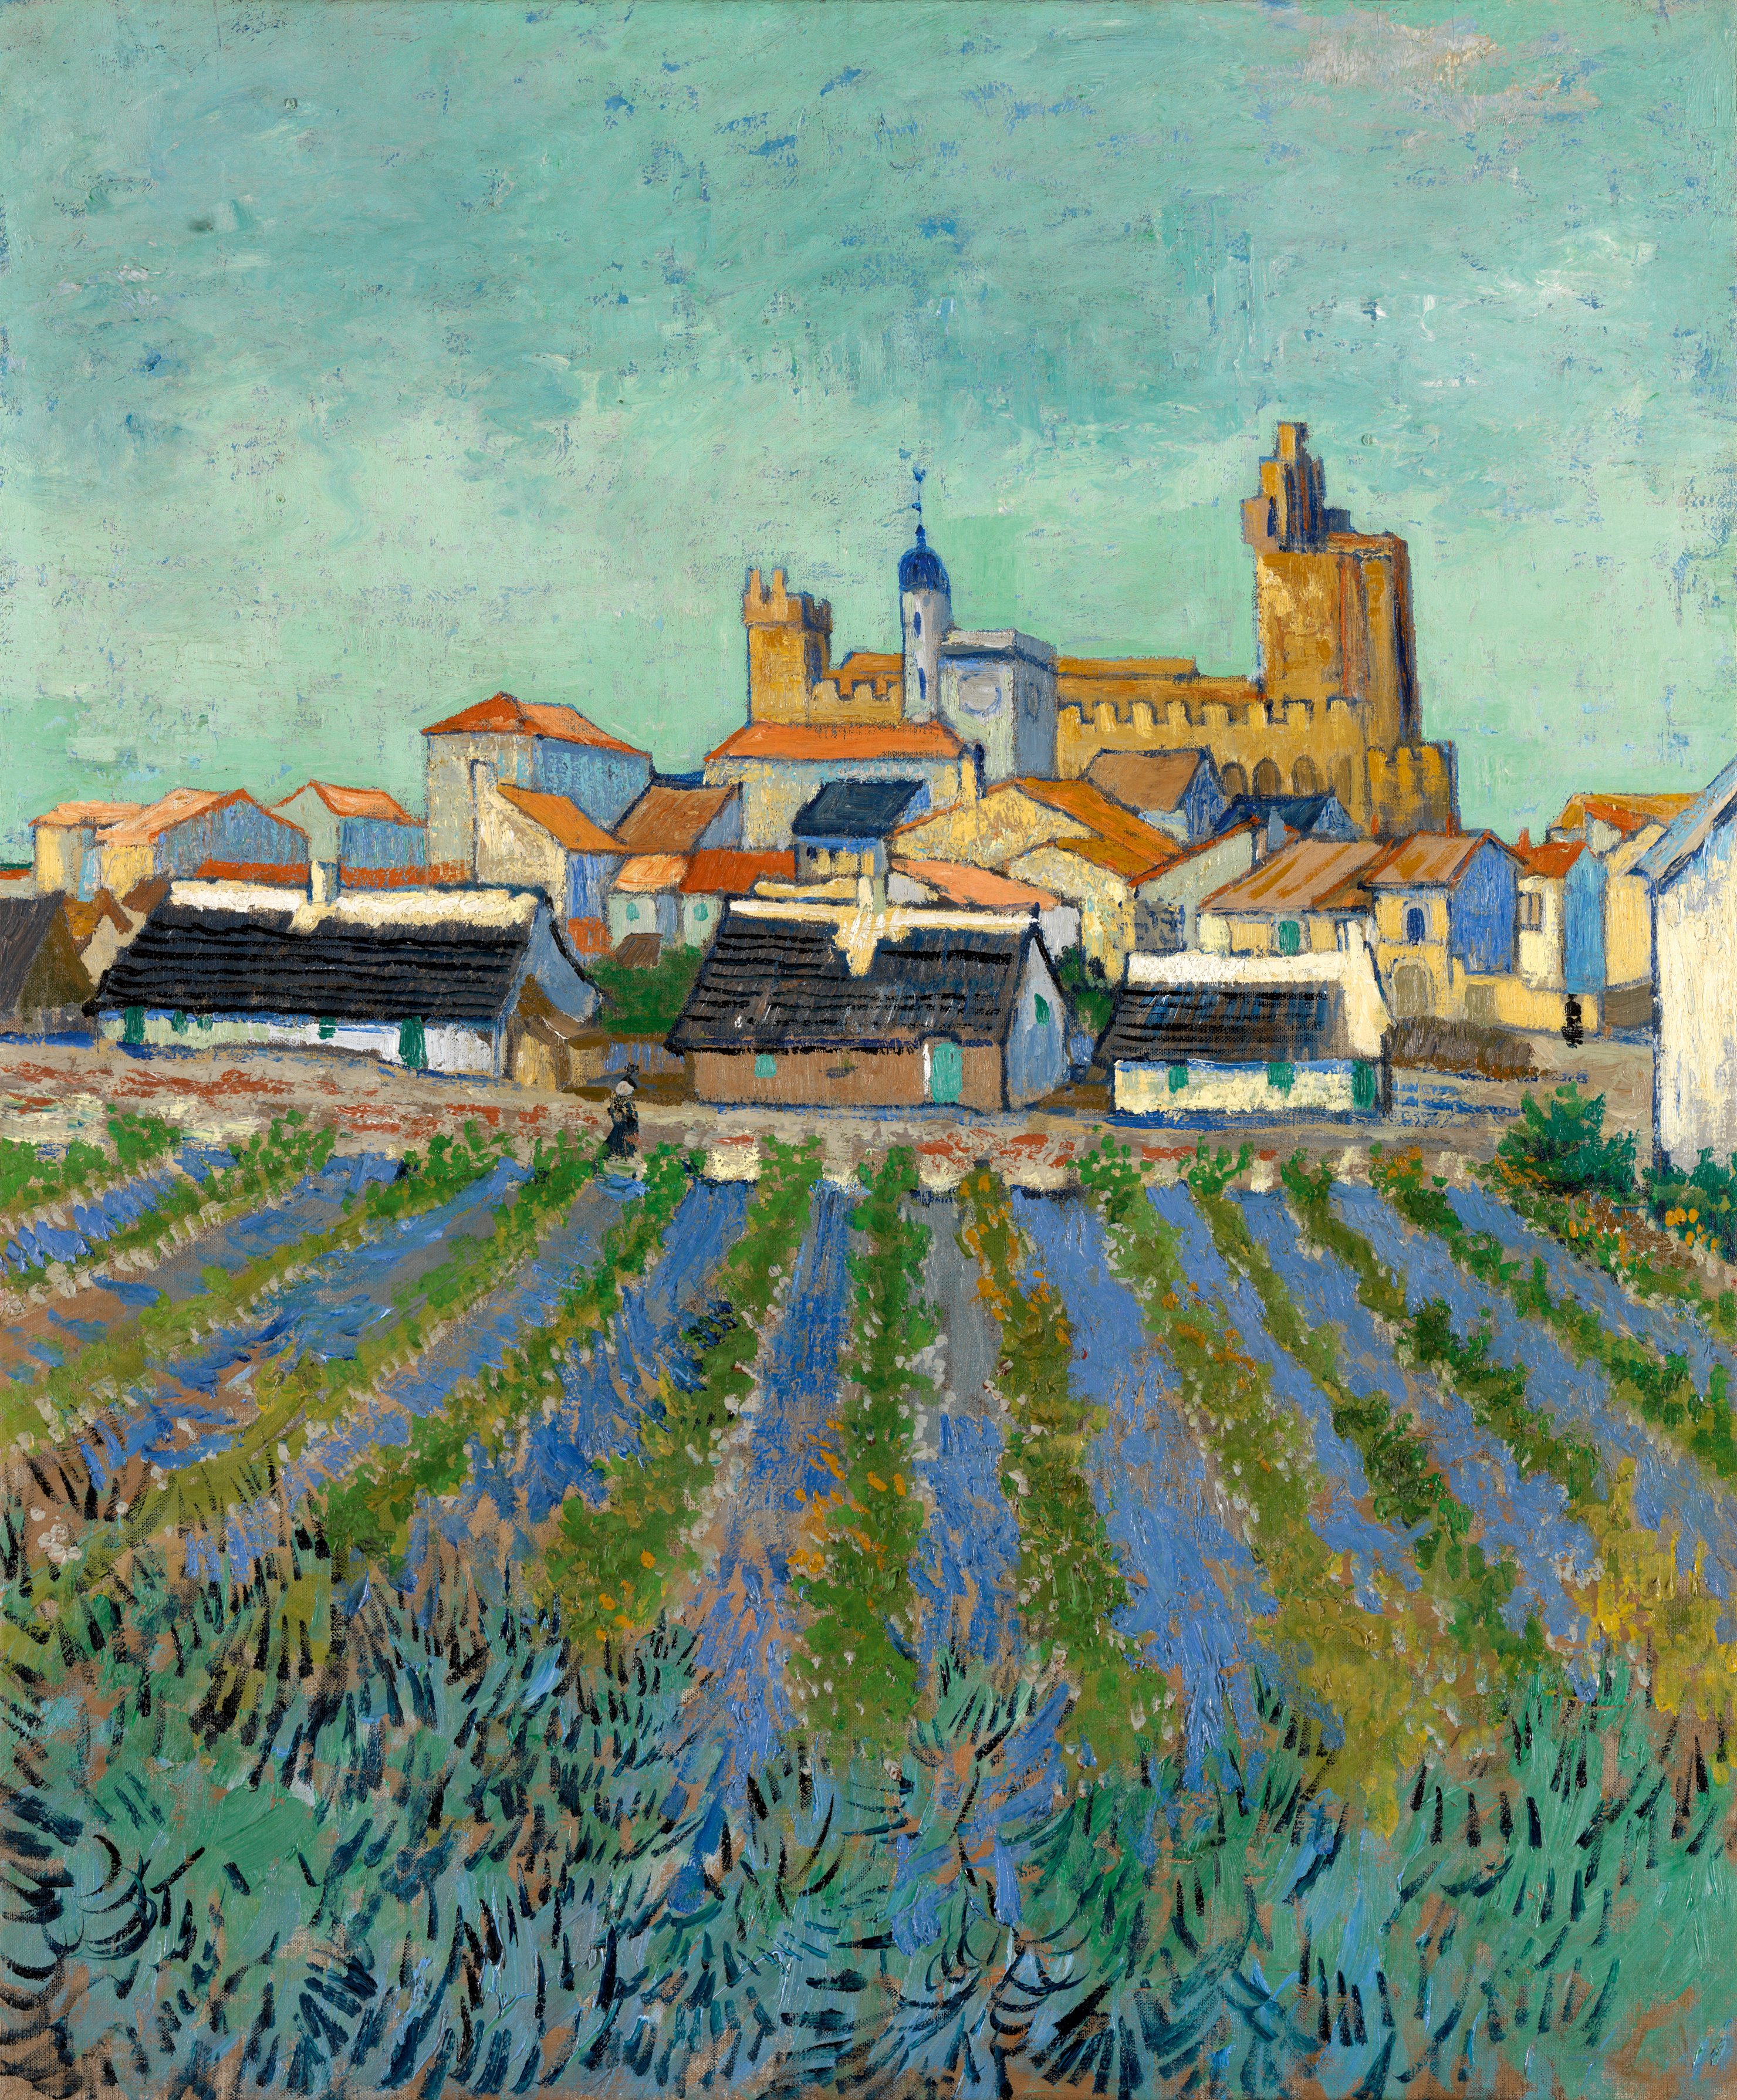 View of Les Saintes-Maries-de-la-Mer by Vincent van Gogh - 1-3 June 1888 - 64,2 x 53 cm Kröller-Müller Museum